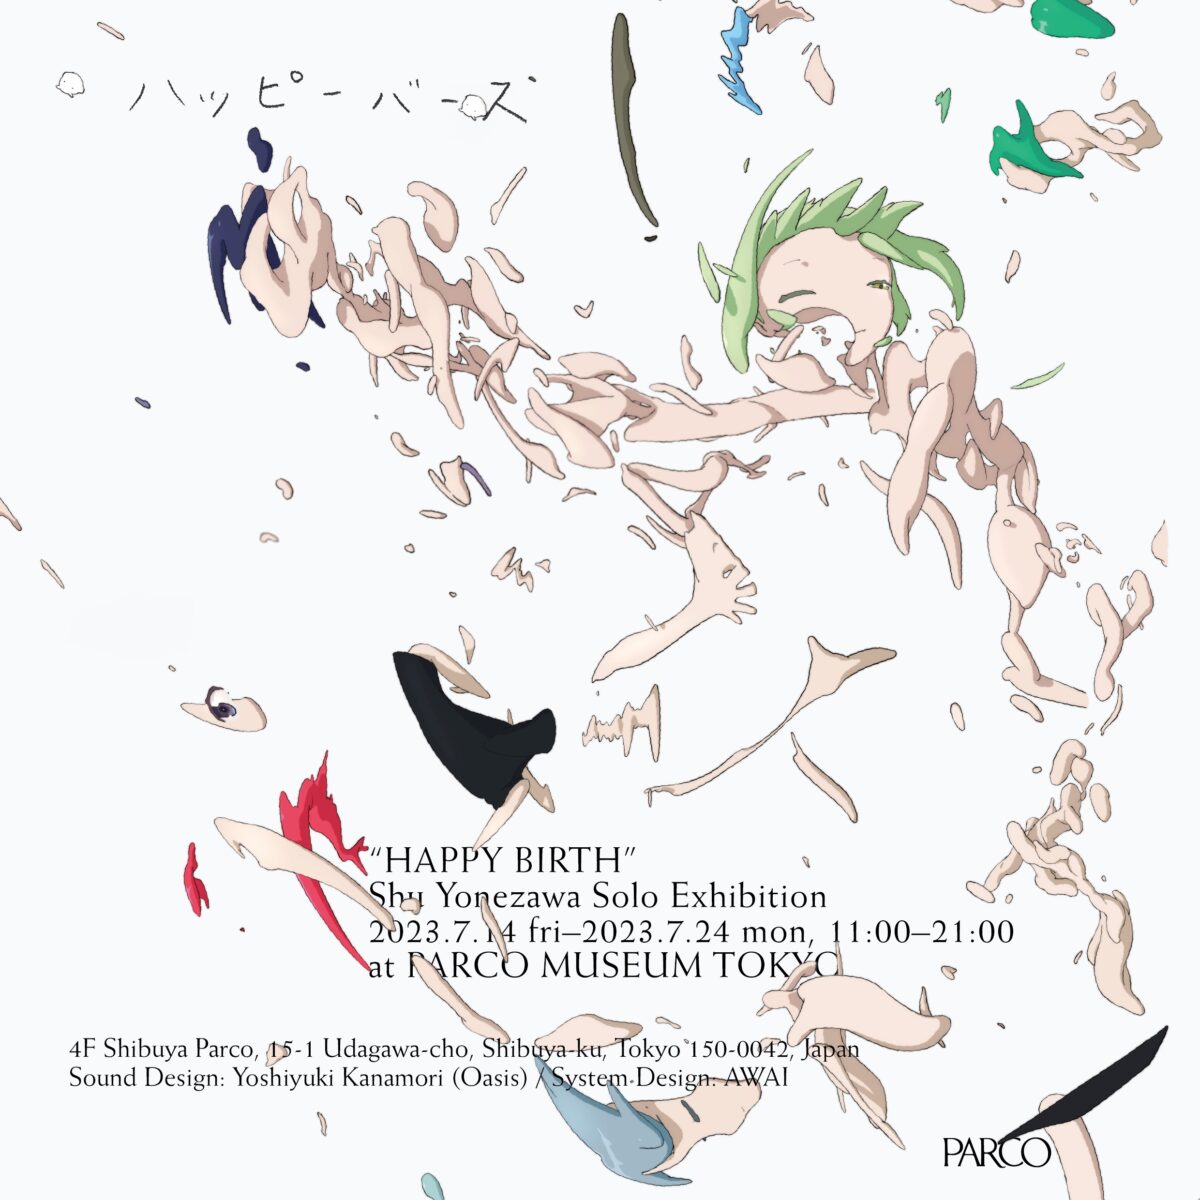 アーティスト米澤柊による初の大規模個展「ハッピーバース」Shu Yonezawa S...